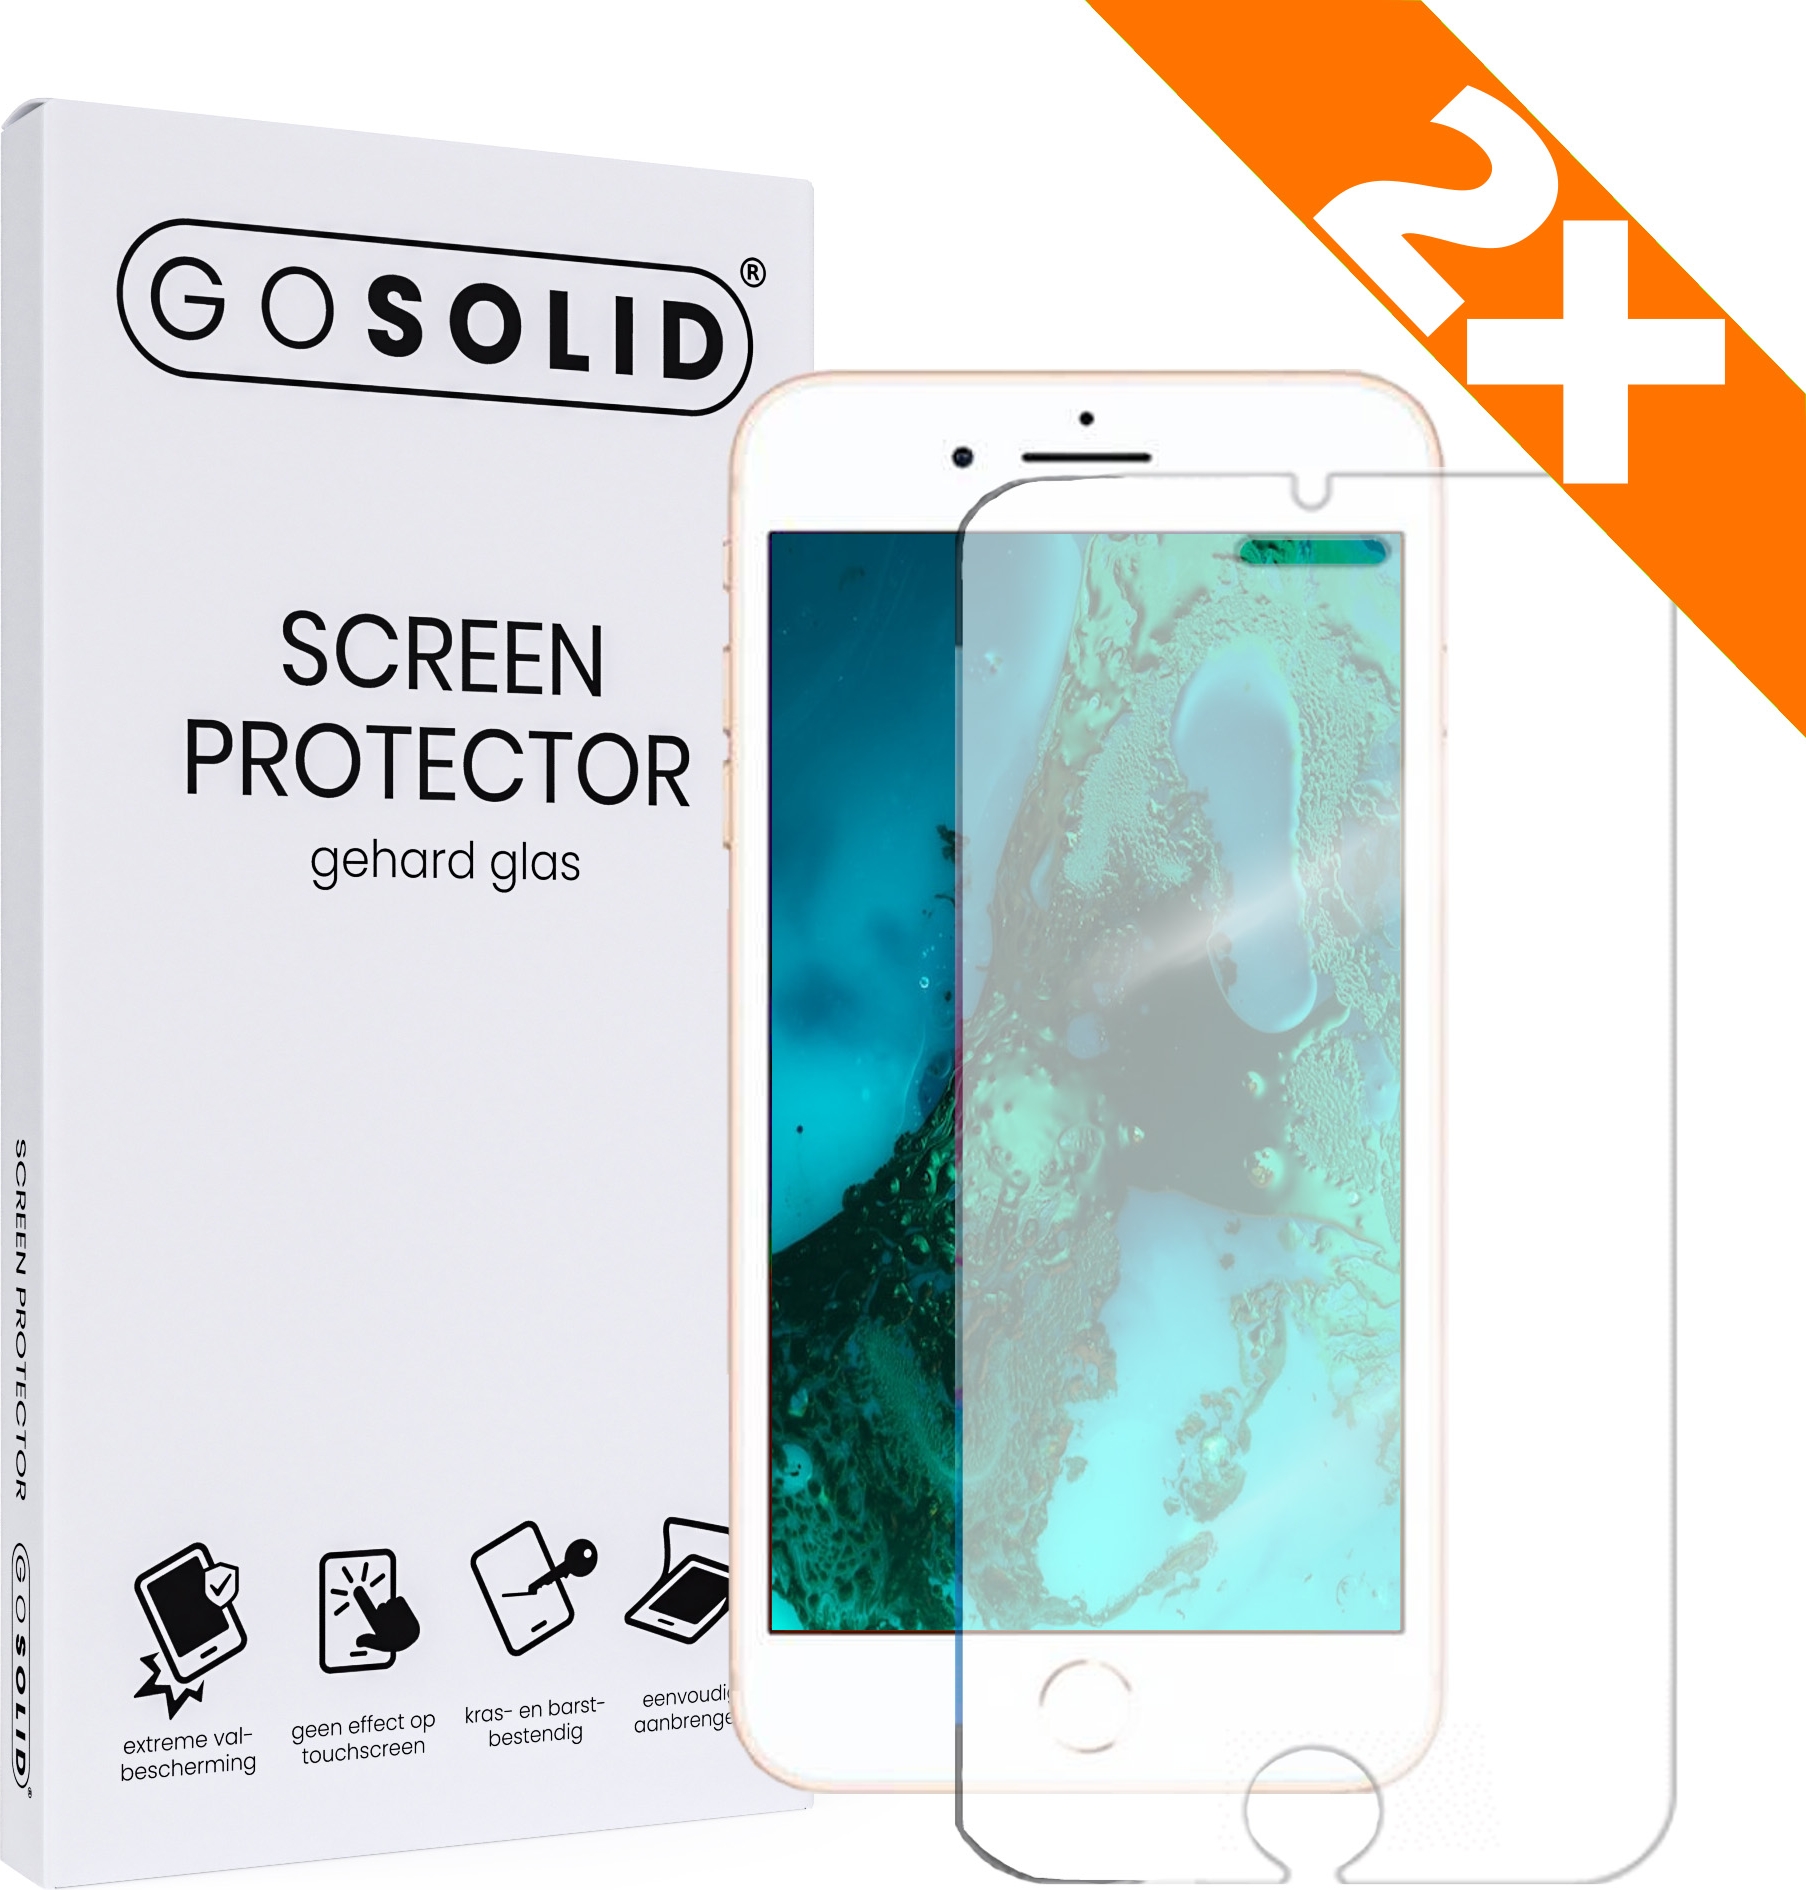 zwavel Kudde schuld ᐅ • GO SOLID! Apple iPhone 8 Plus screenprotector gehard glas - Duopack |  Eenvoudig bij ScreenProtectors.nl